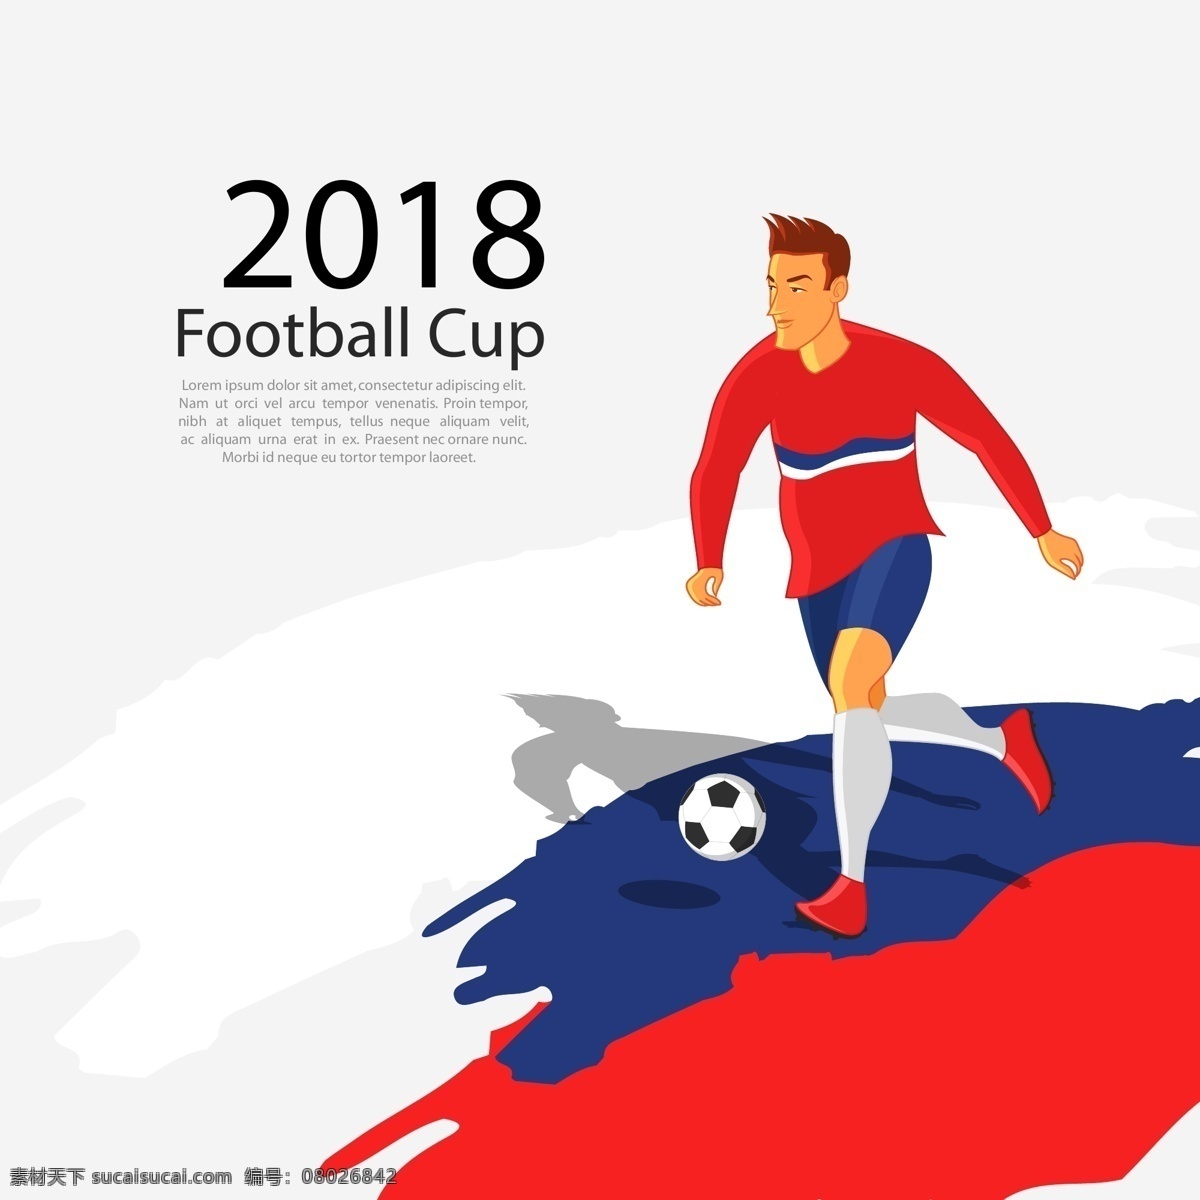 三 色 喷绘 世界杯 足球 卡通 踢球 元素 俄罗斯 足球运动 俄罗斯世界杯 2018 足球世界杯 2018足球 三色